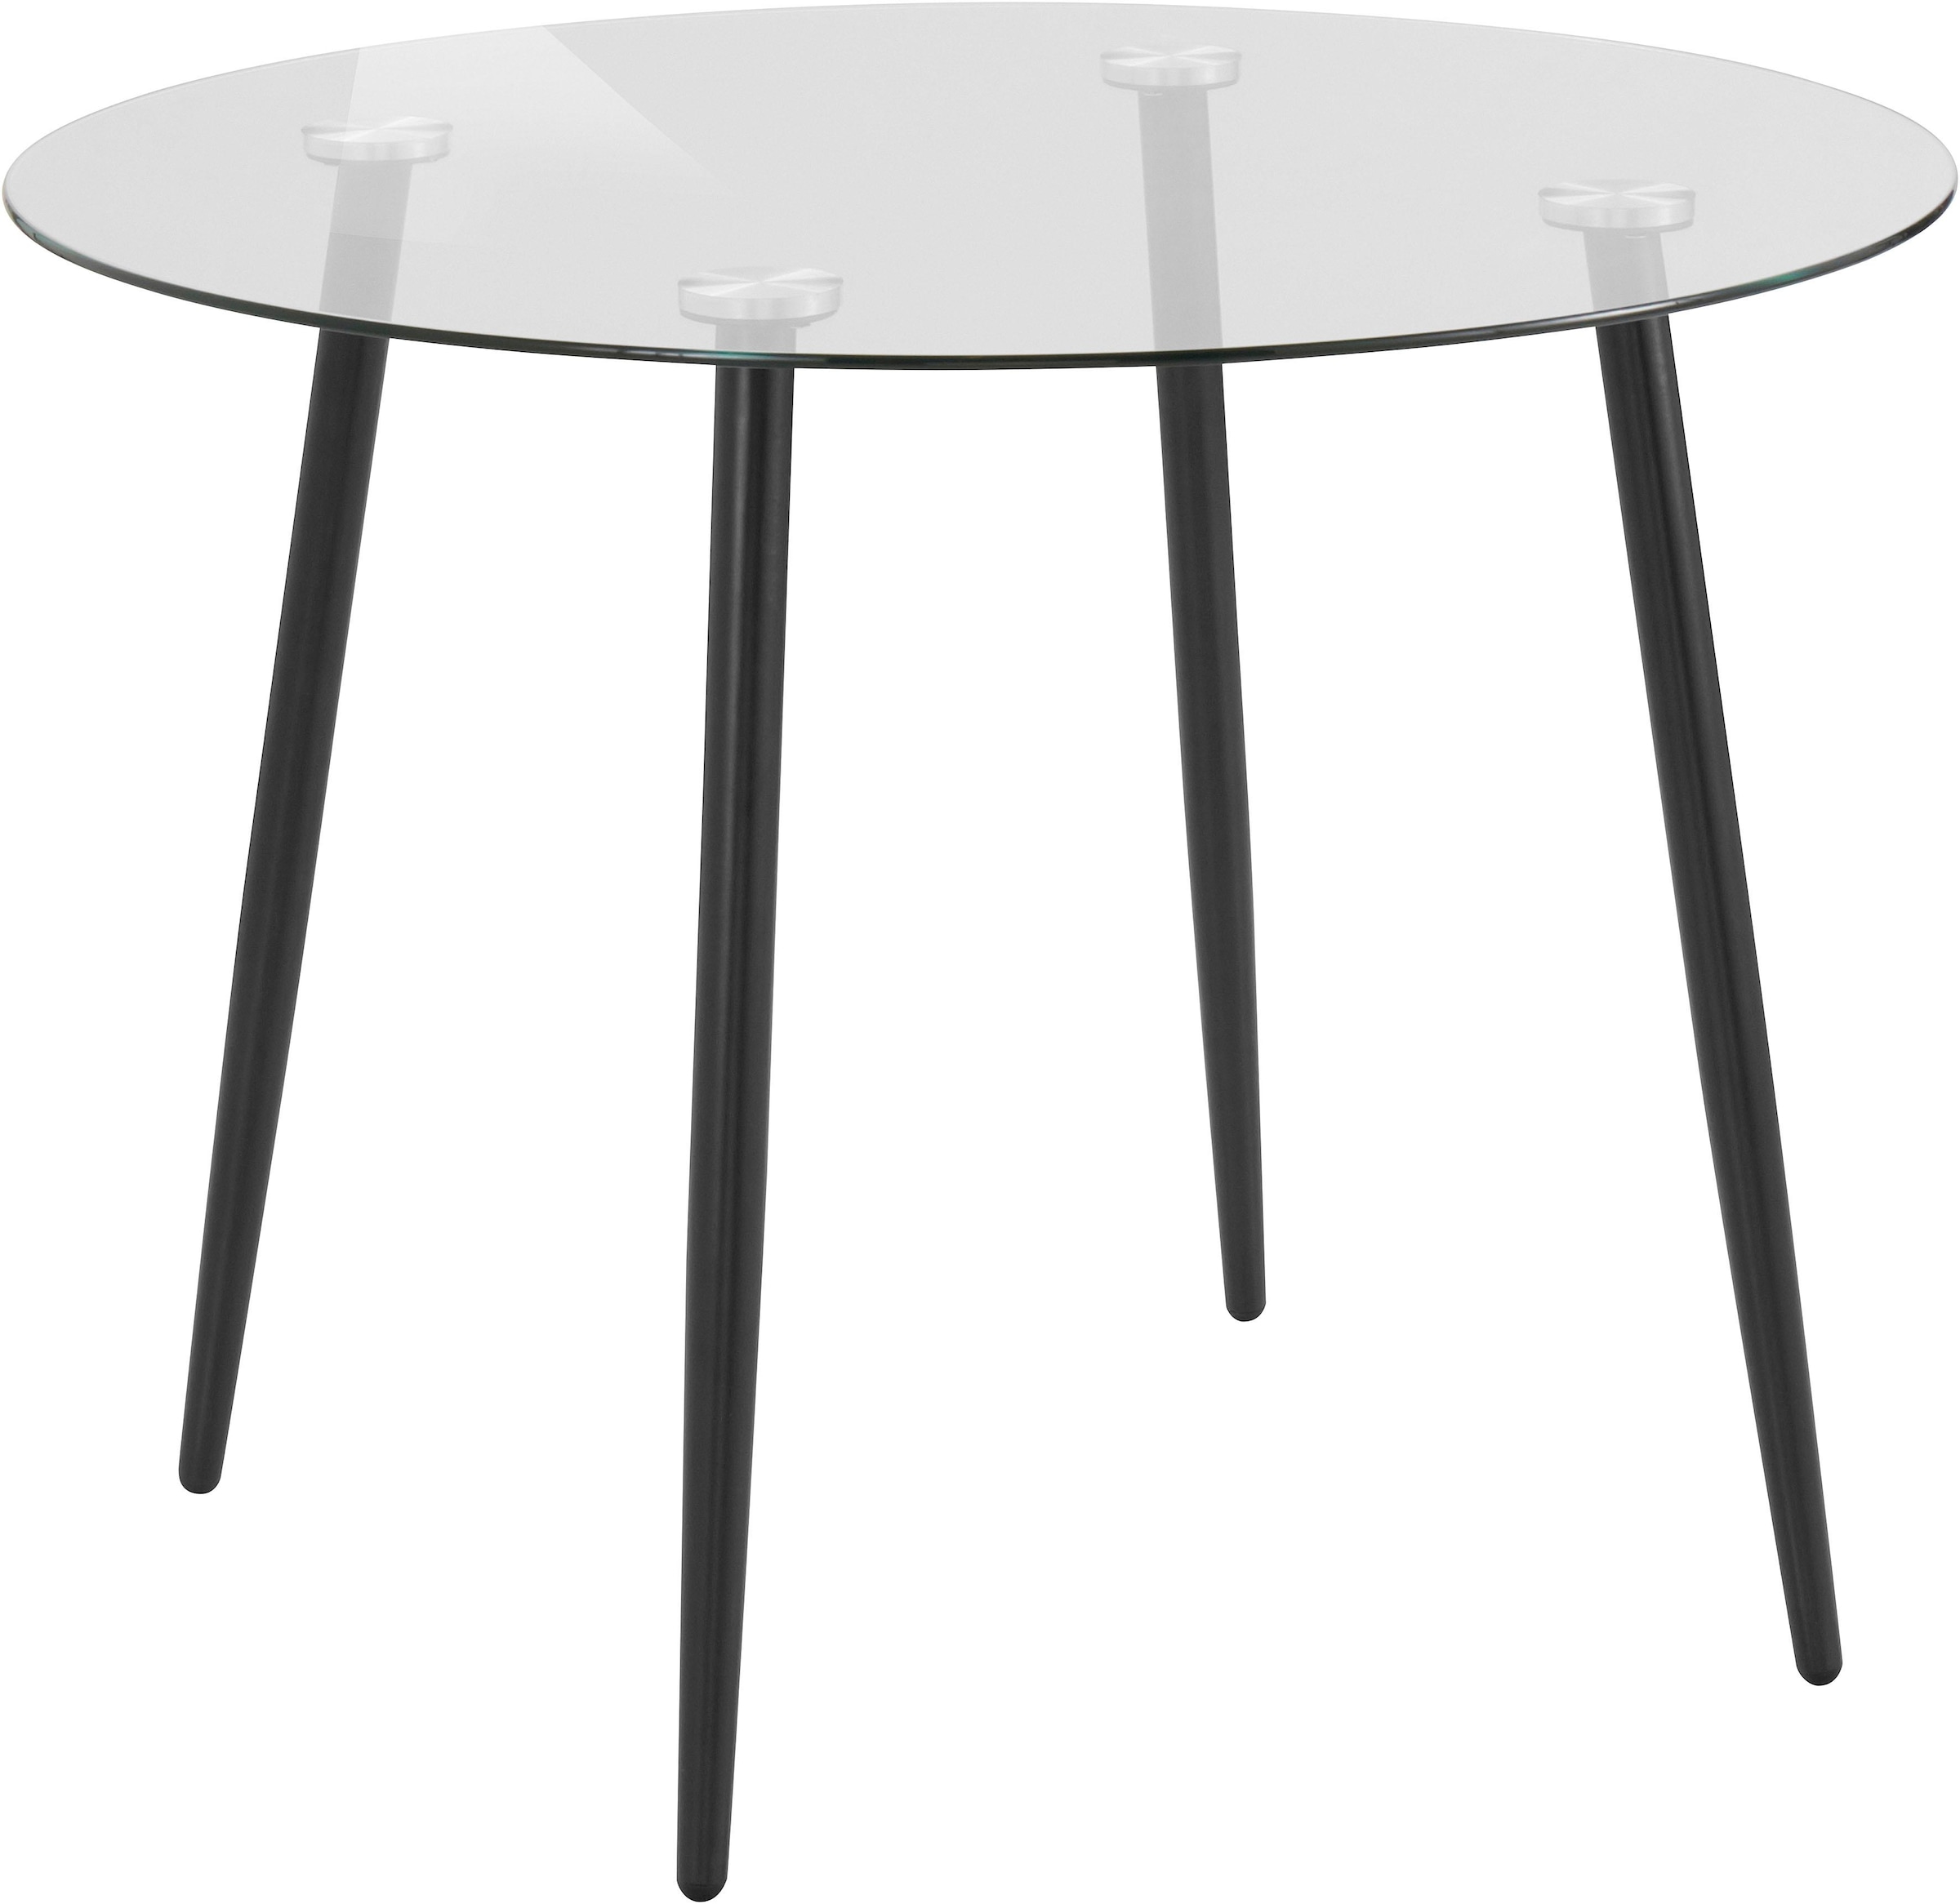 Glastisch »Danny«, runder Esstisch mit einem Ø von 100 cm